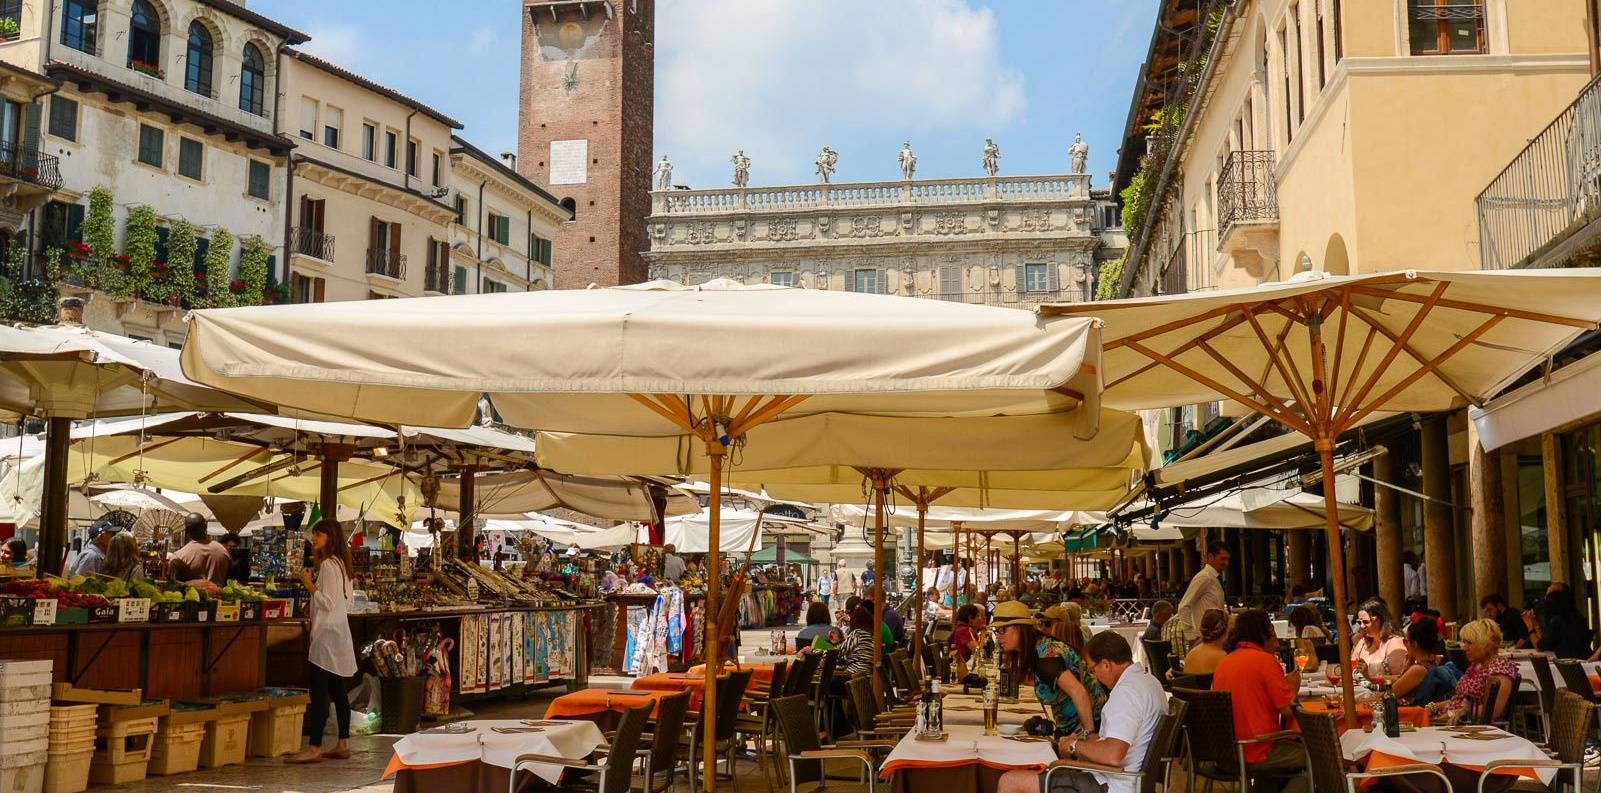 attivit` commerciale in Via Roma a Verona